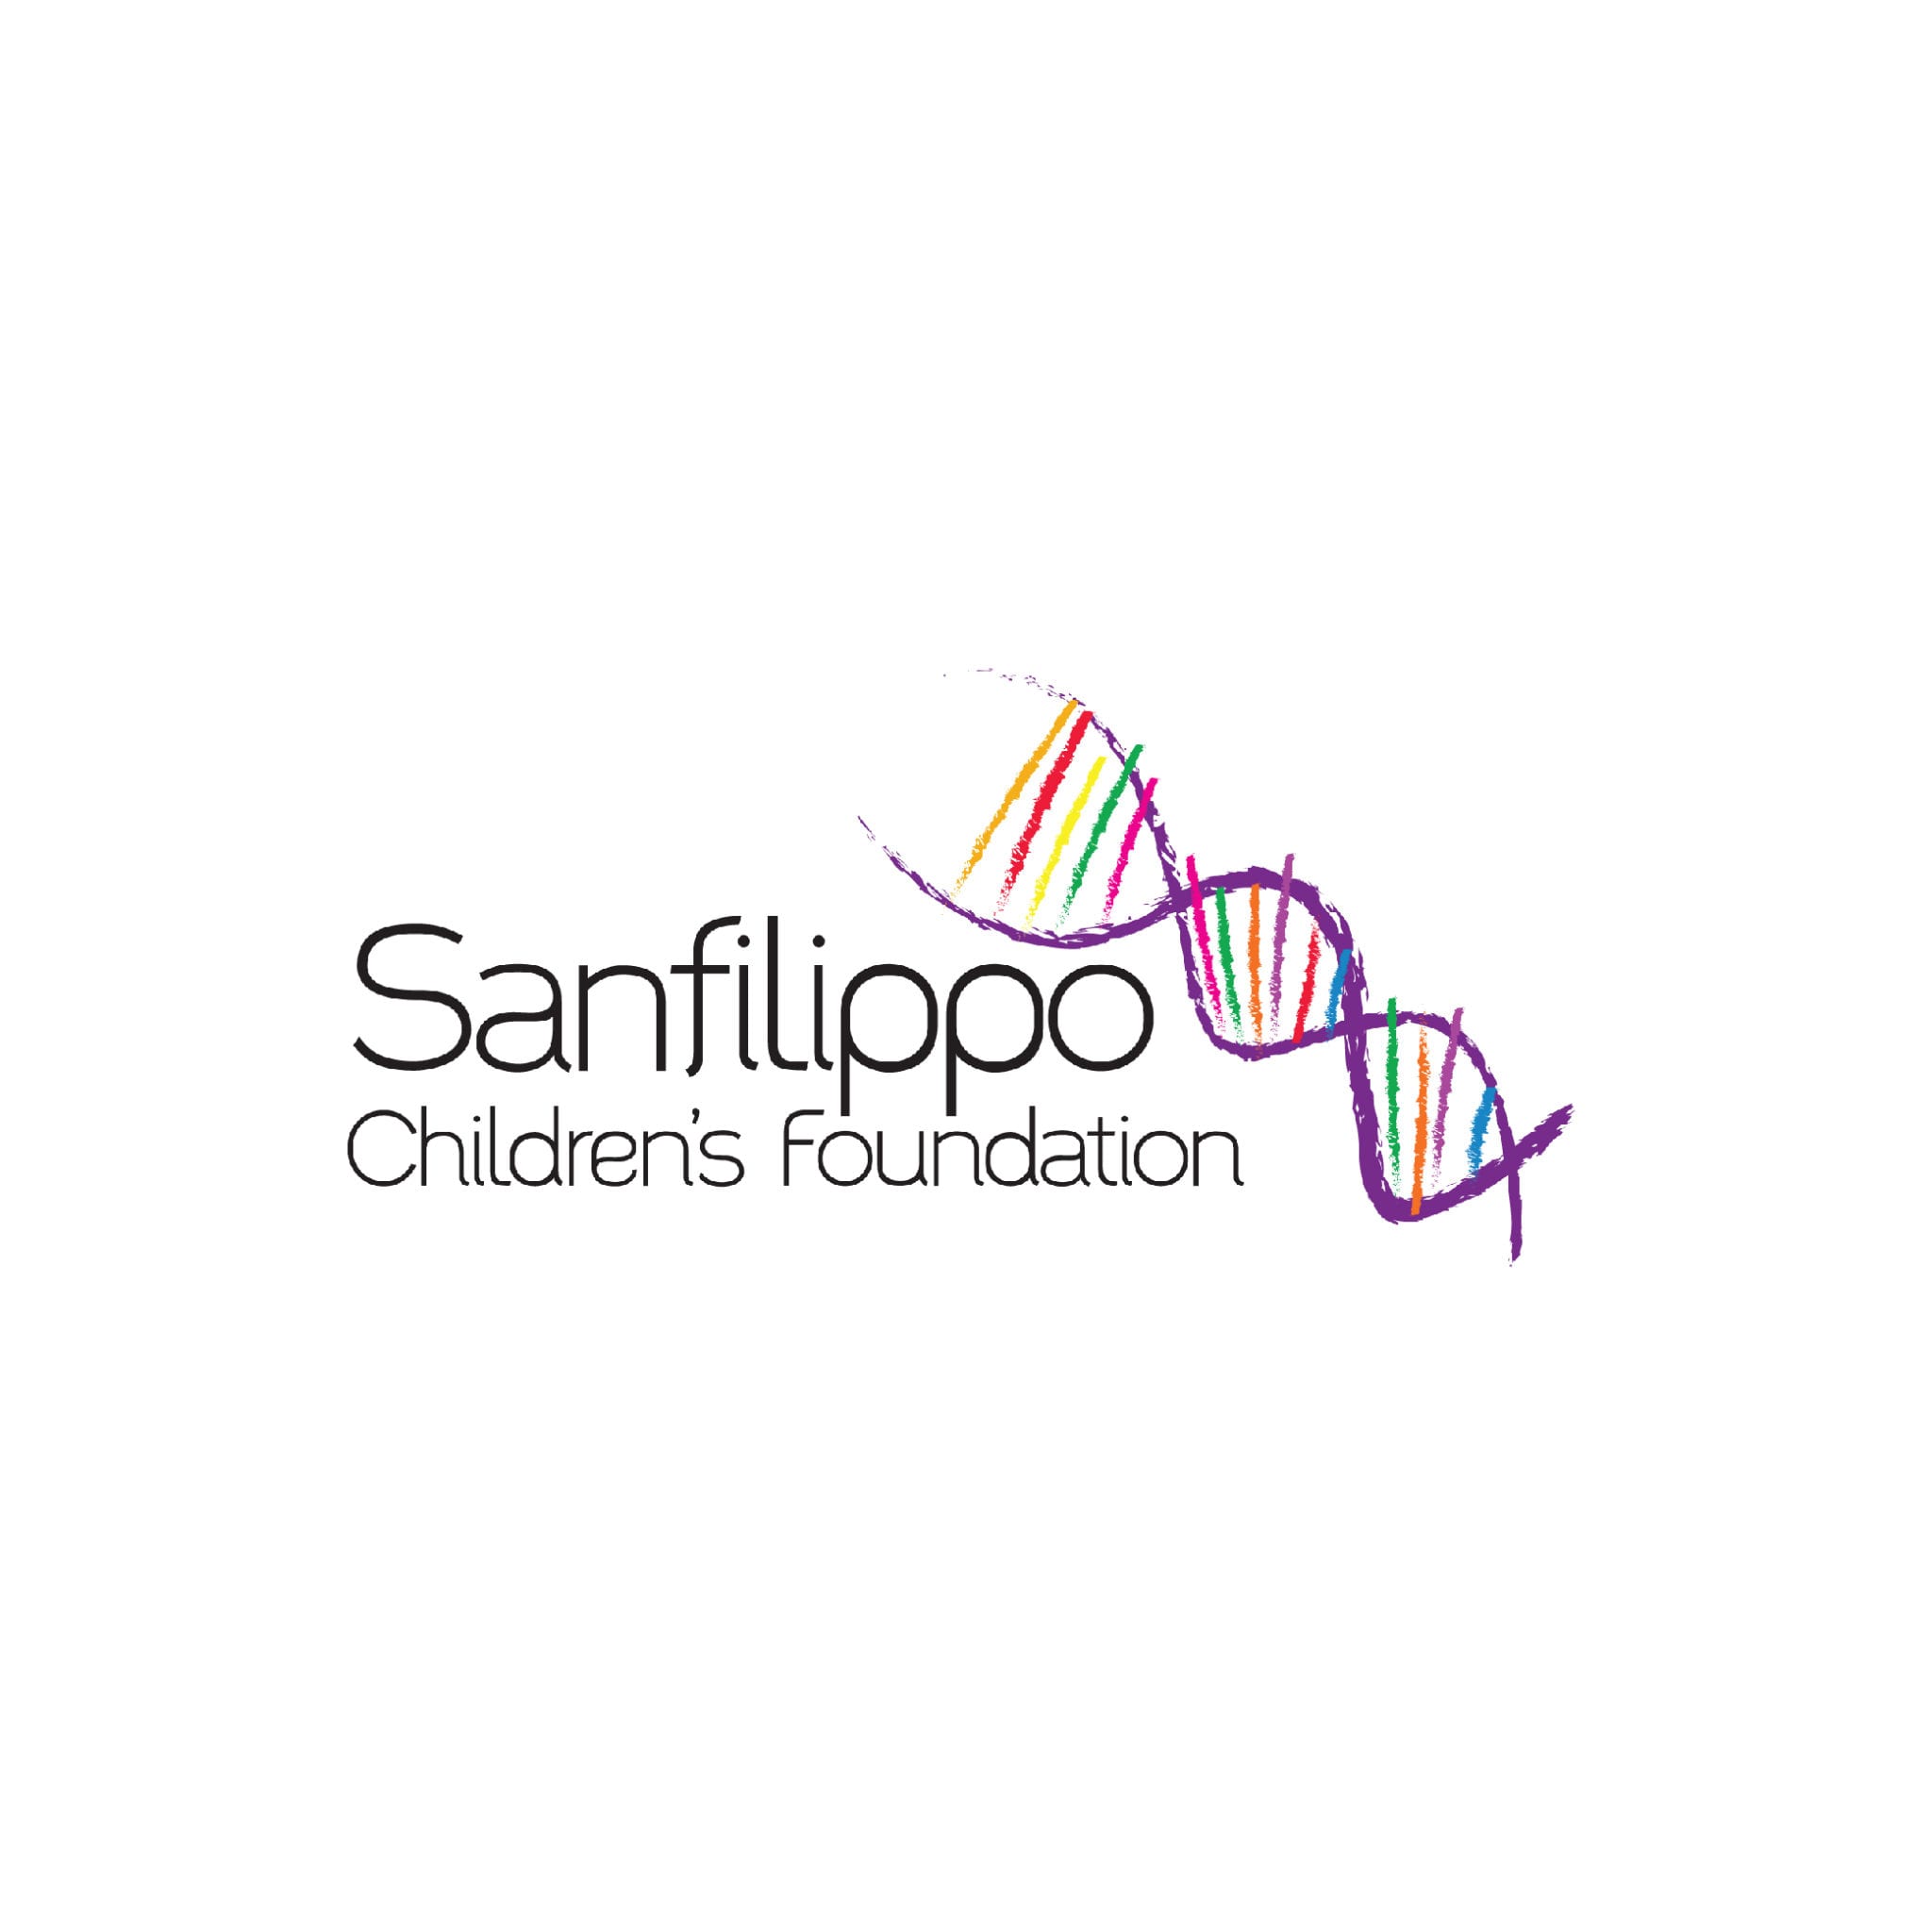 Sanfilippo Children's Foundation